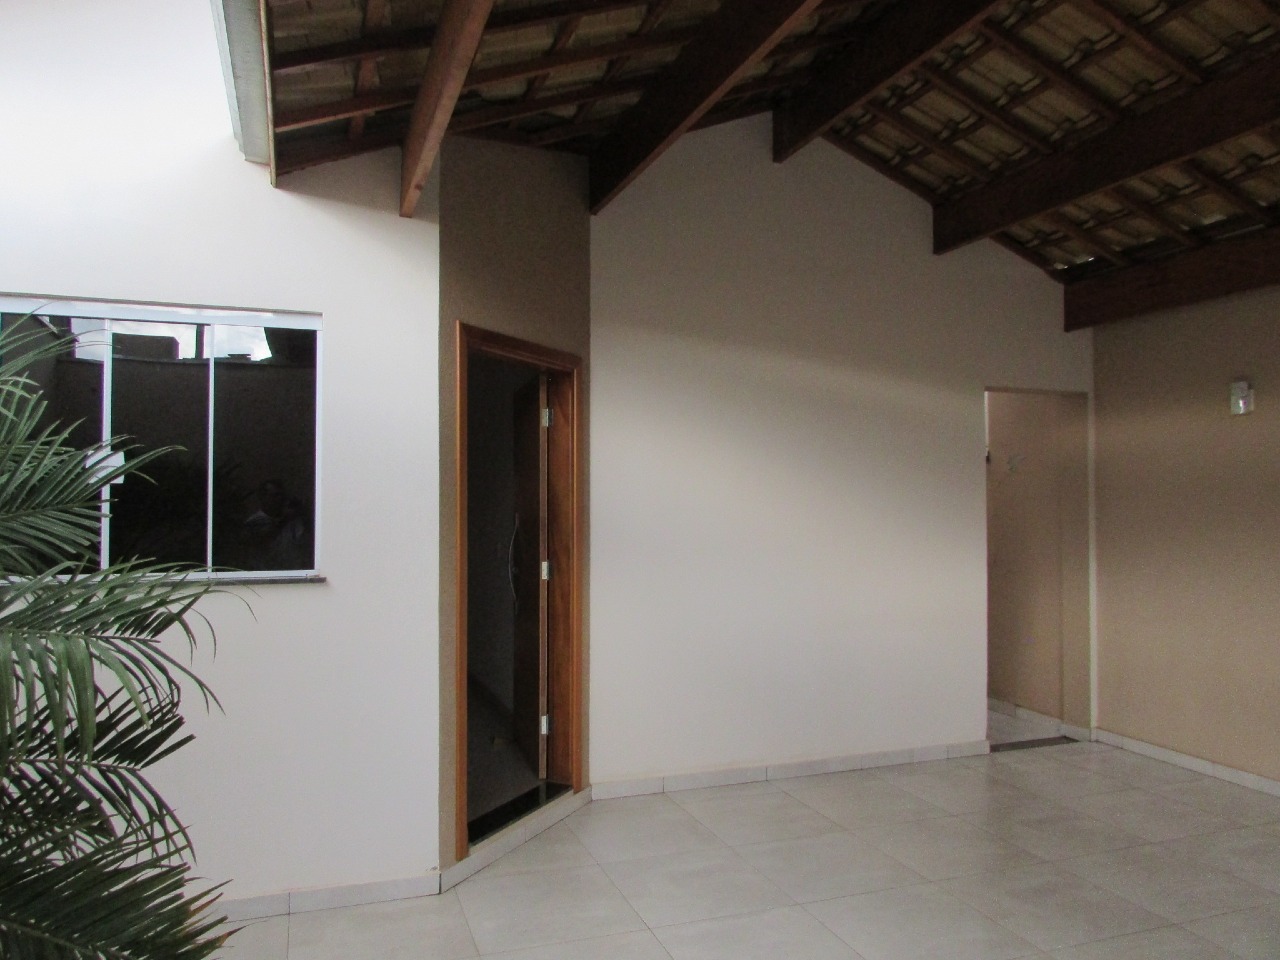 Casa à venda, 3 quartos, sendo 1 suíte, 2 vagas, no bairro Altos do Taquaral em Piracicaba - SP